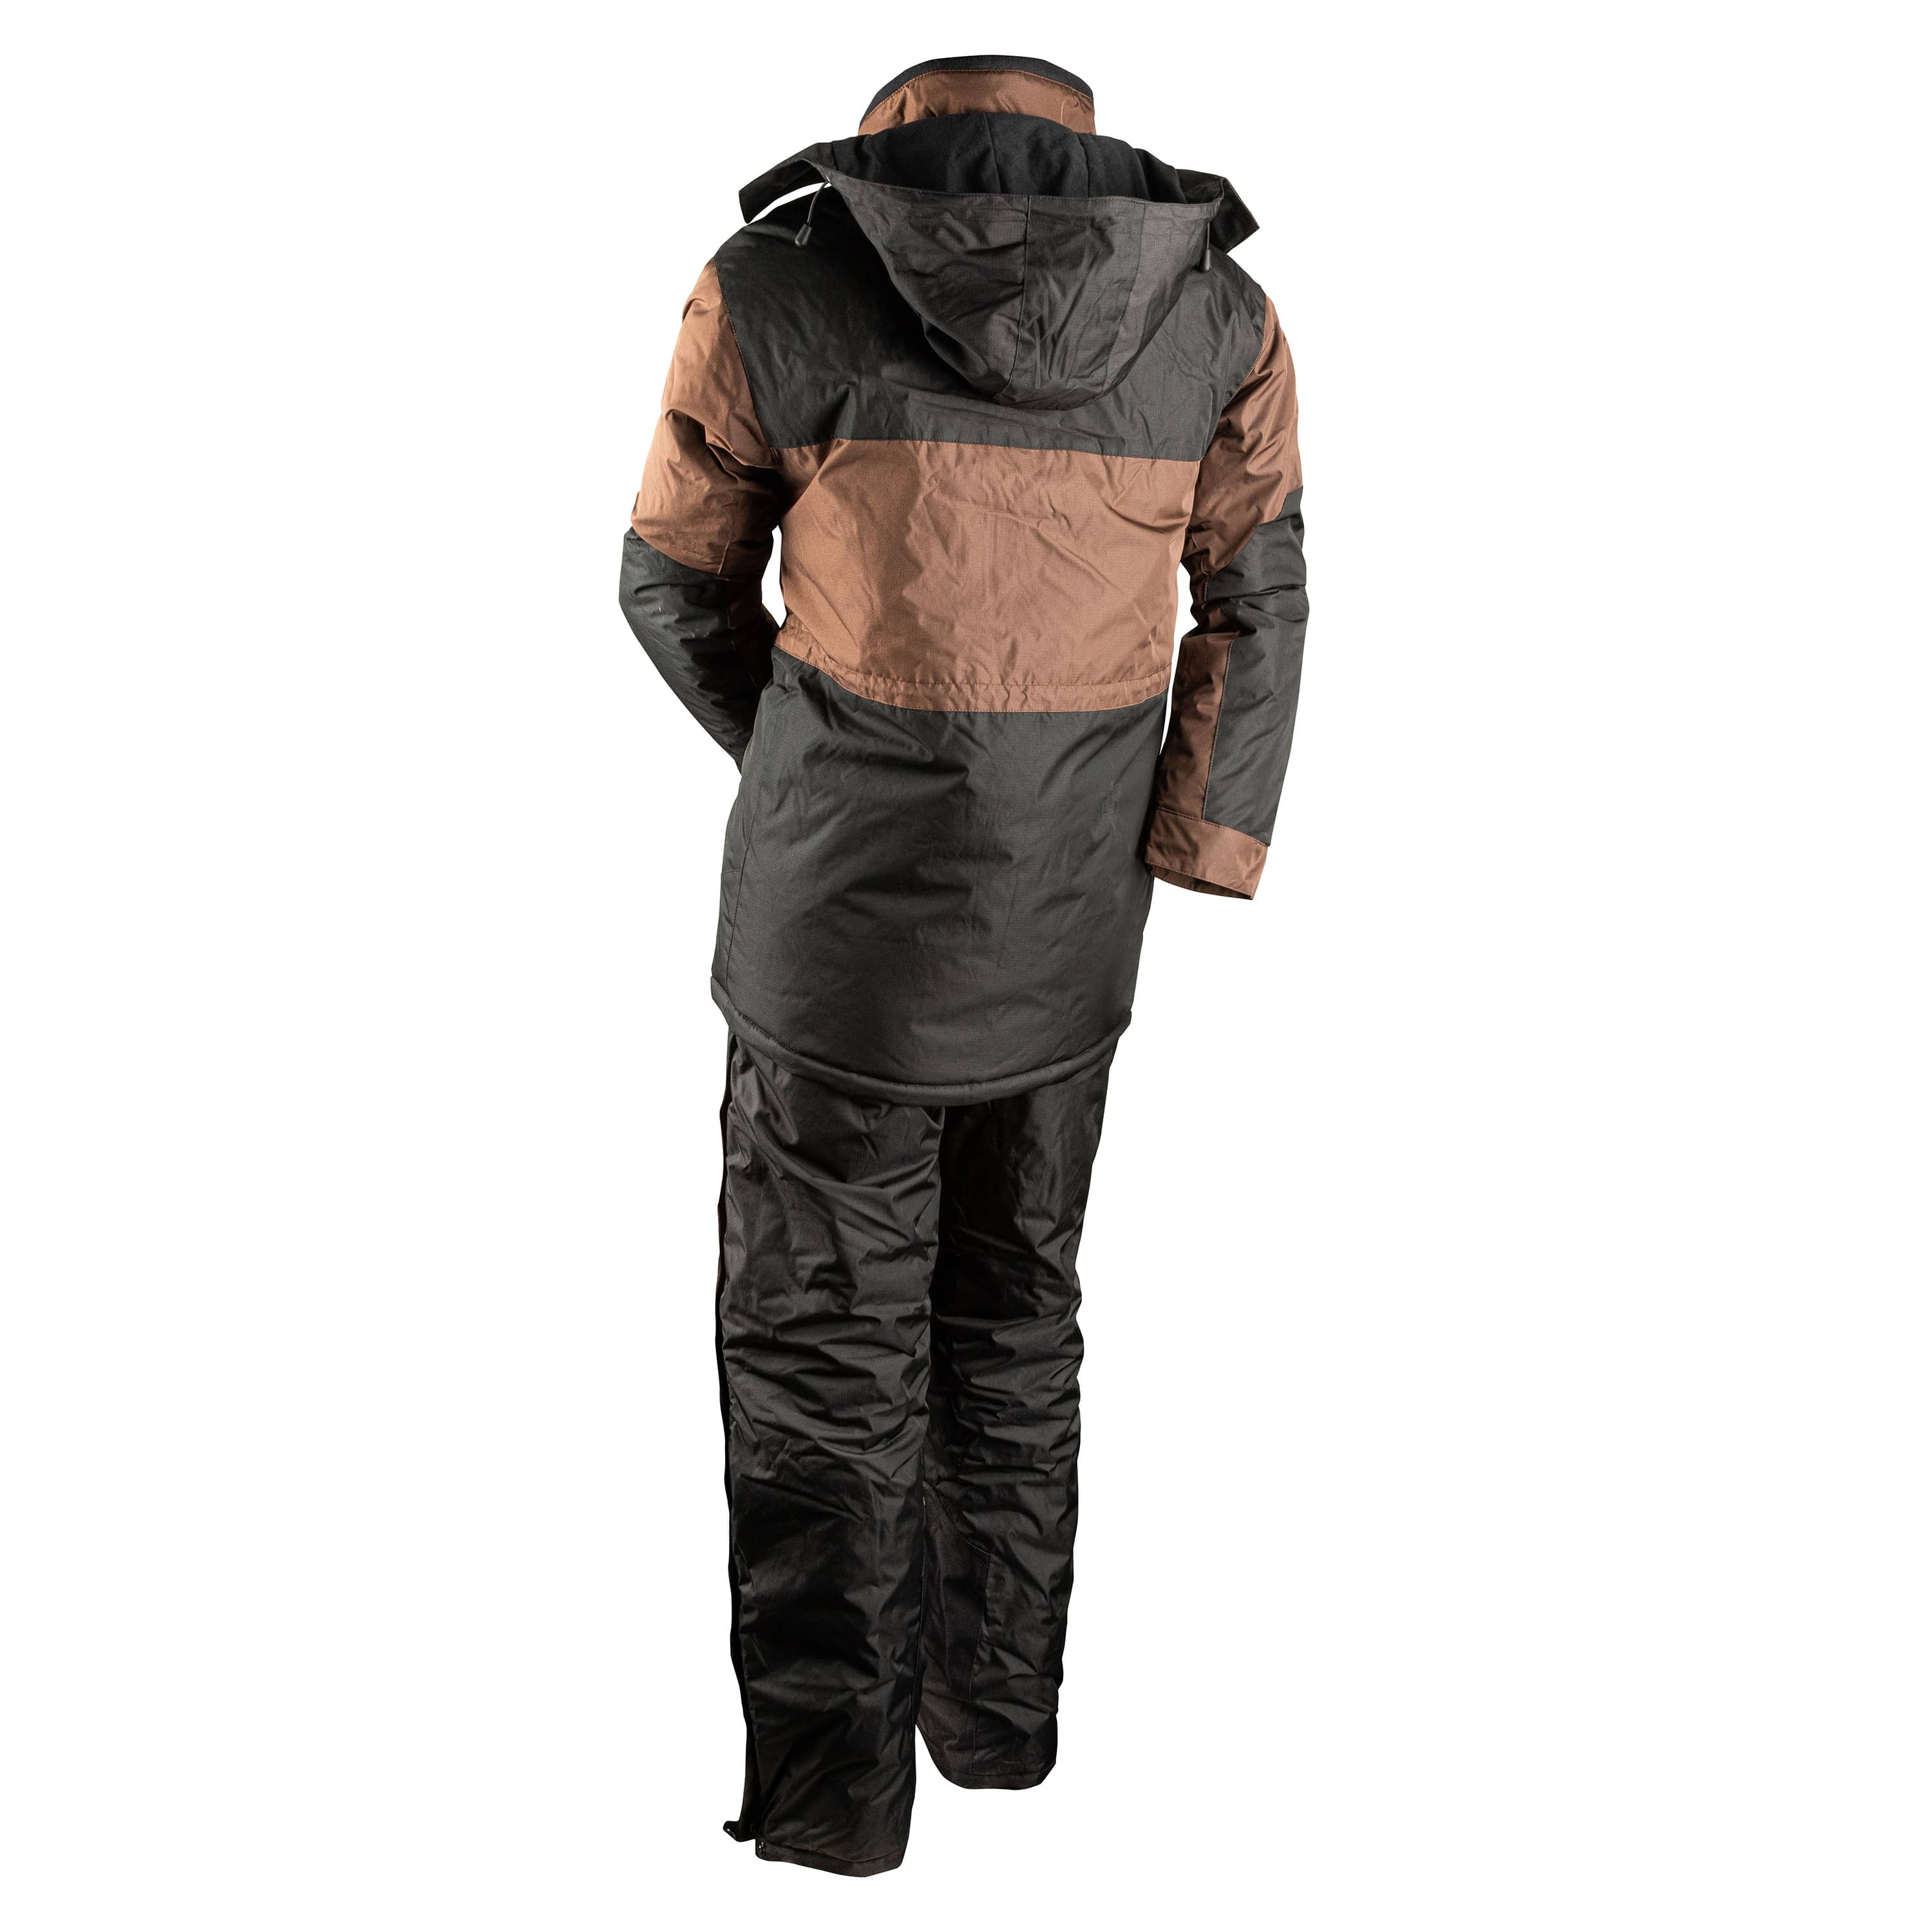 "Noroit II" Snowsuit kit - Men's